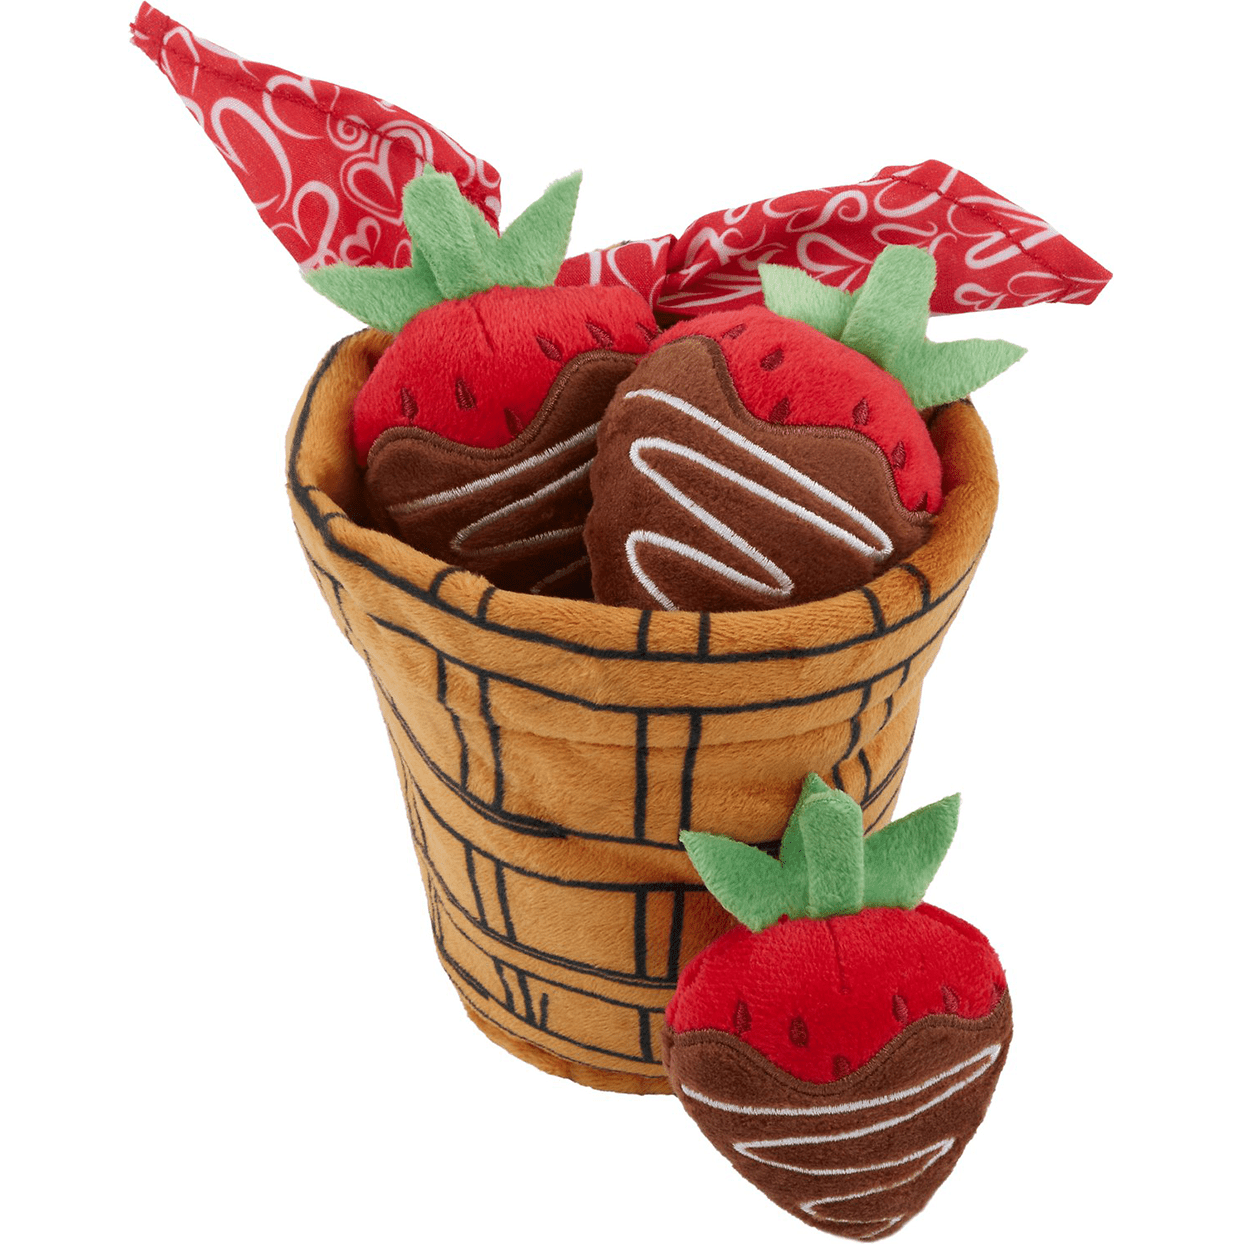 frisco valentine strawberry basket catnip toys